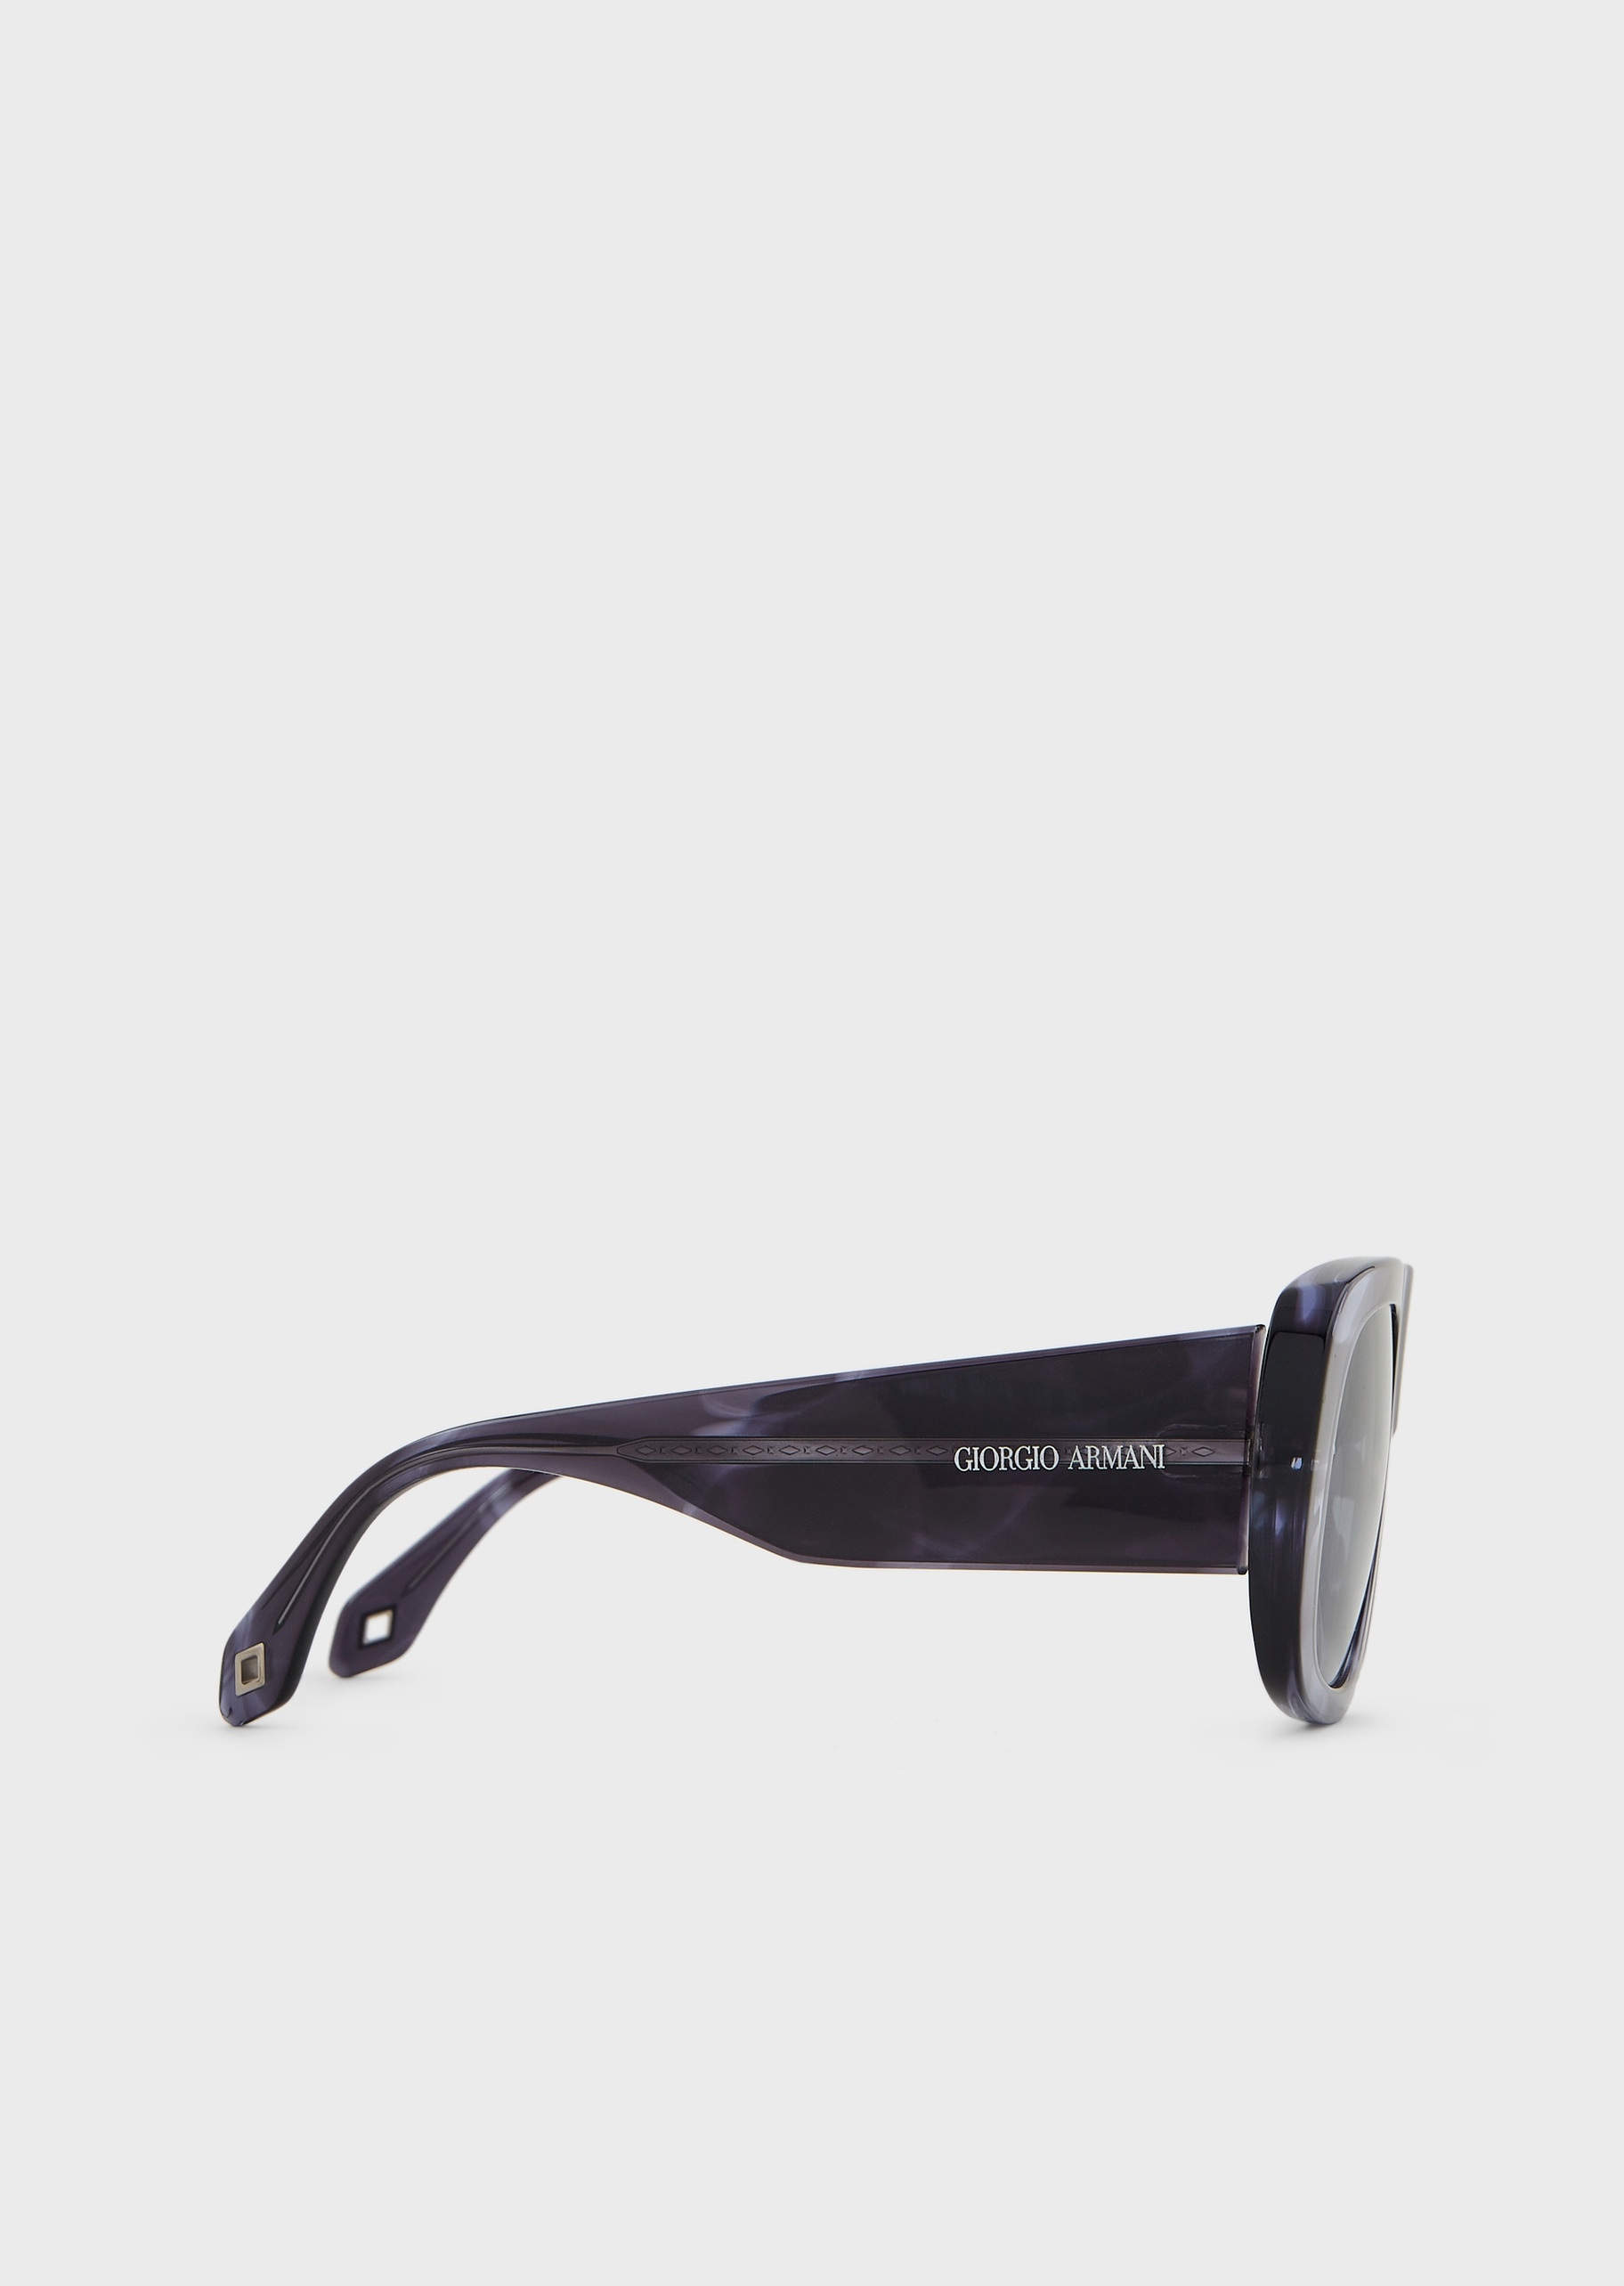 Giorgio Armani 男士个性枕型粗框太阳眼镜